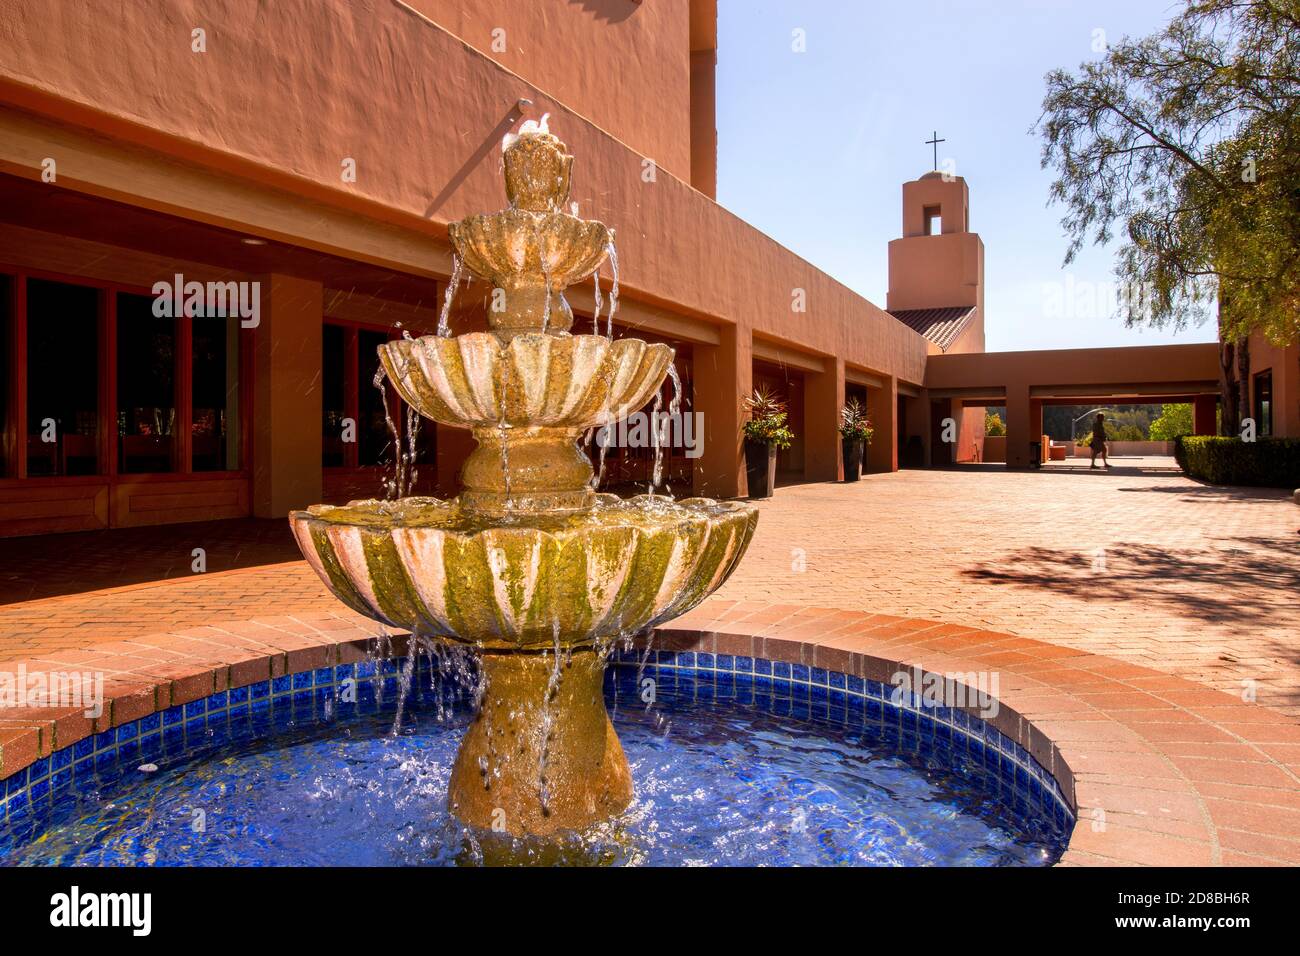 Una fontana fresca bolle nel sole del pomeriggio nel cortile di una chiesa cattolica nel sud della California. Foto Stock